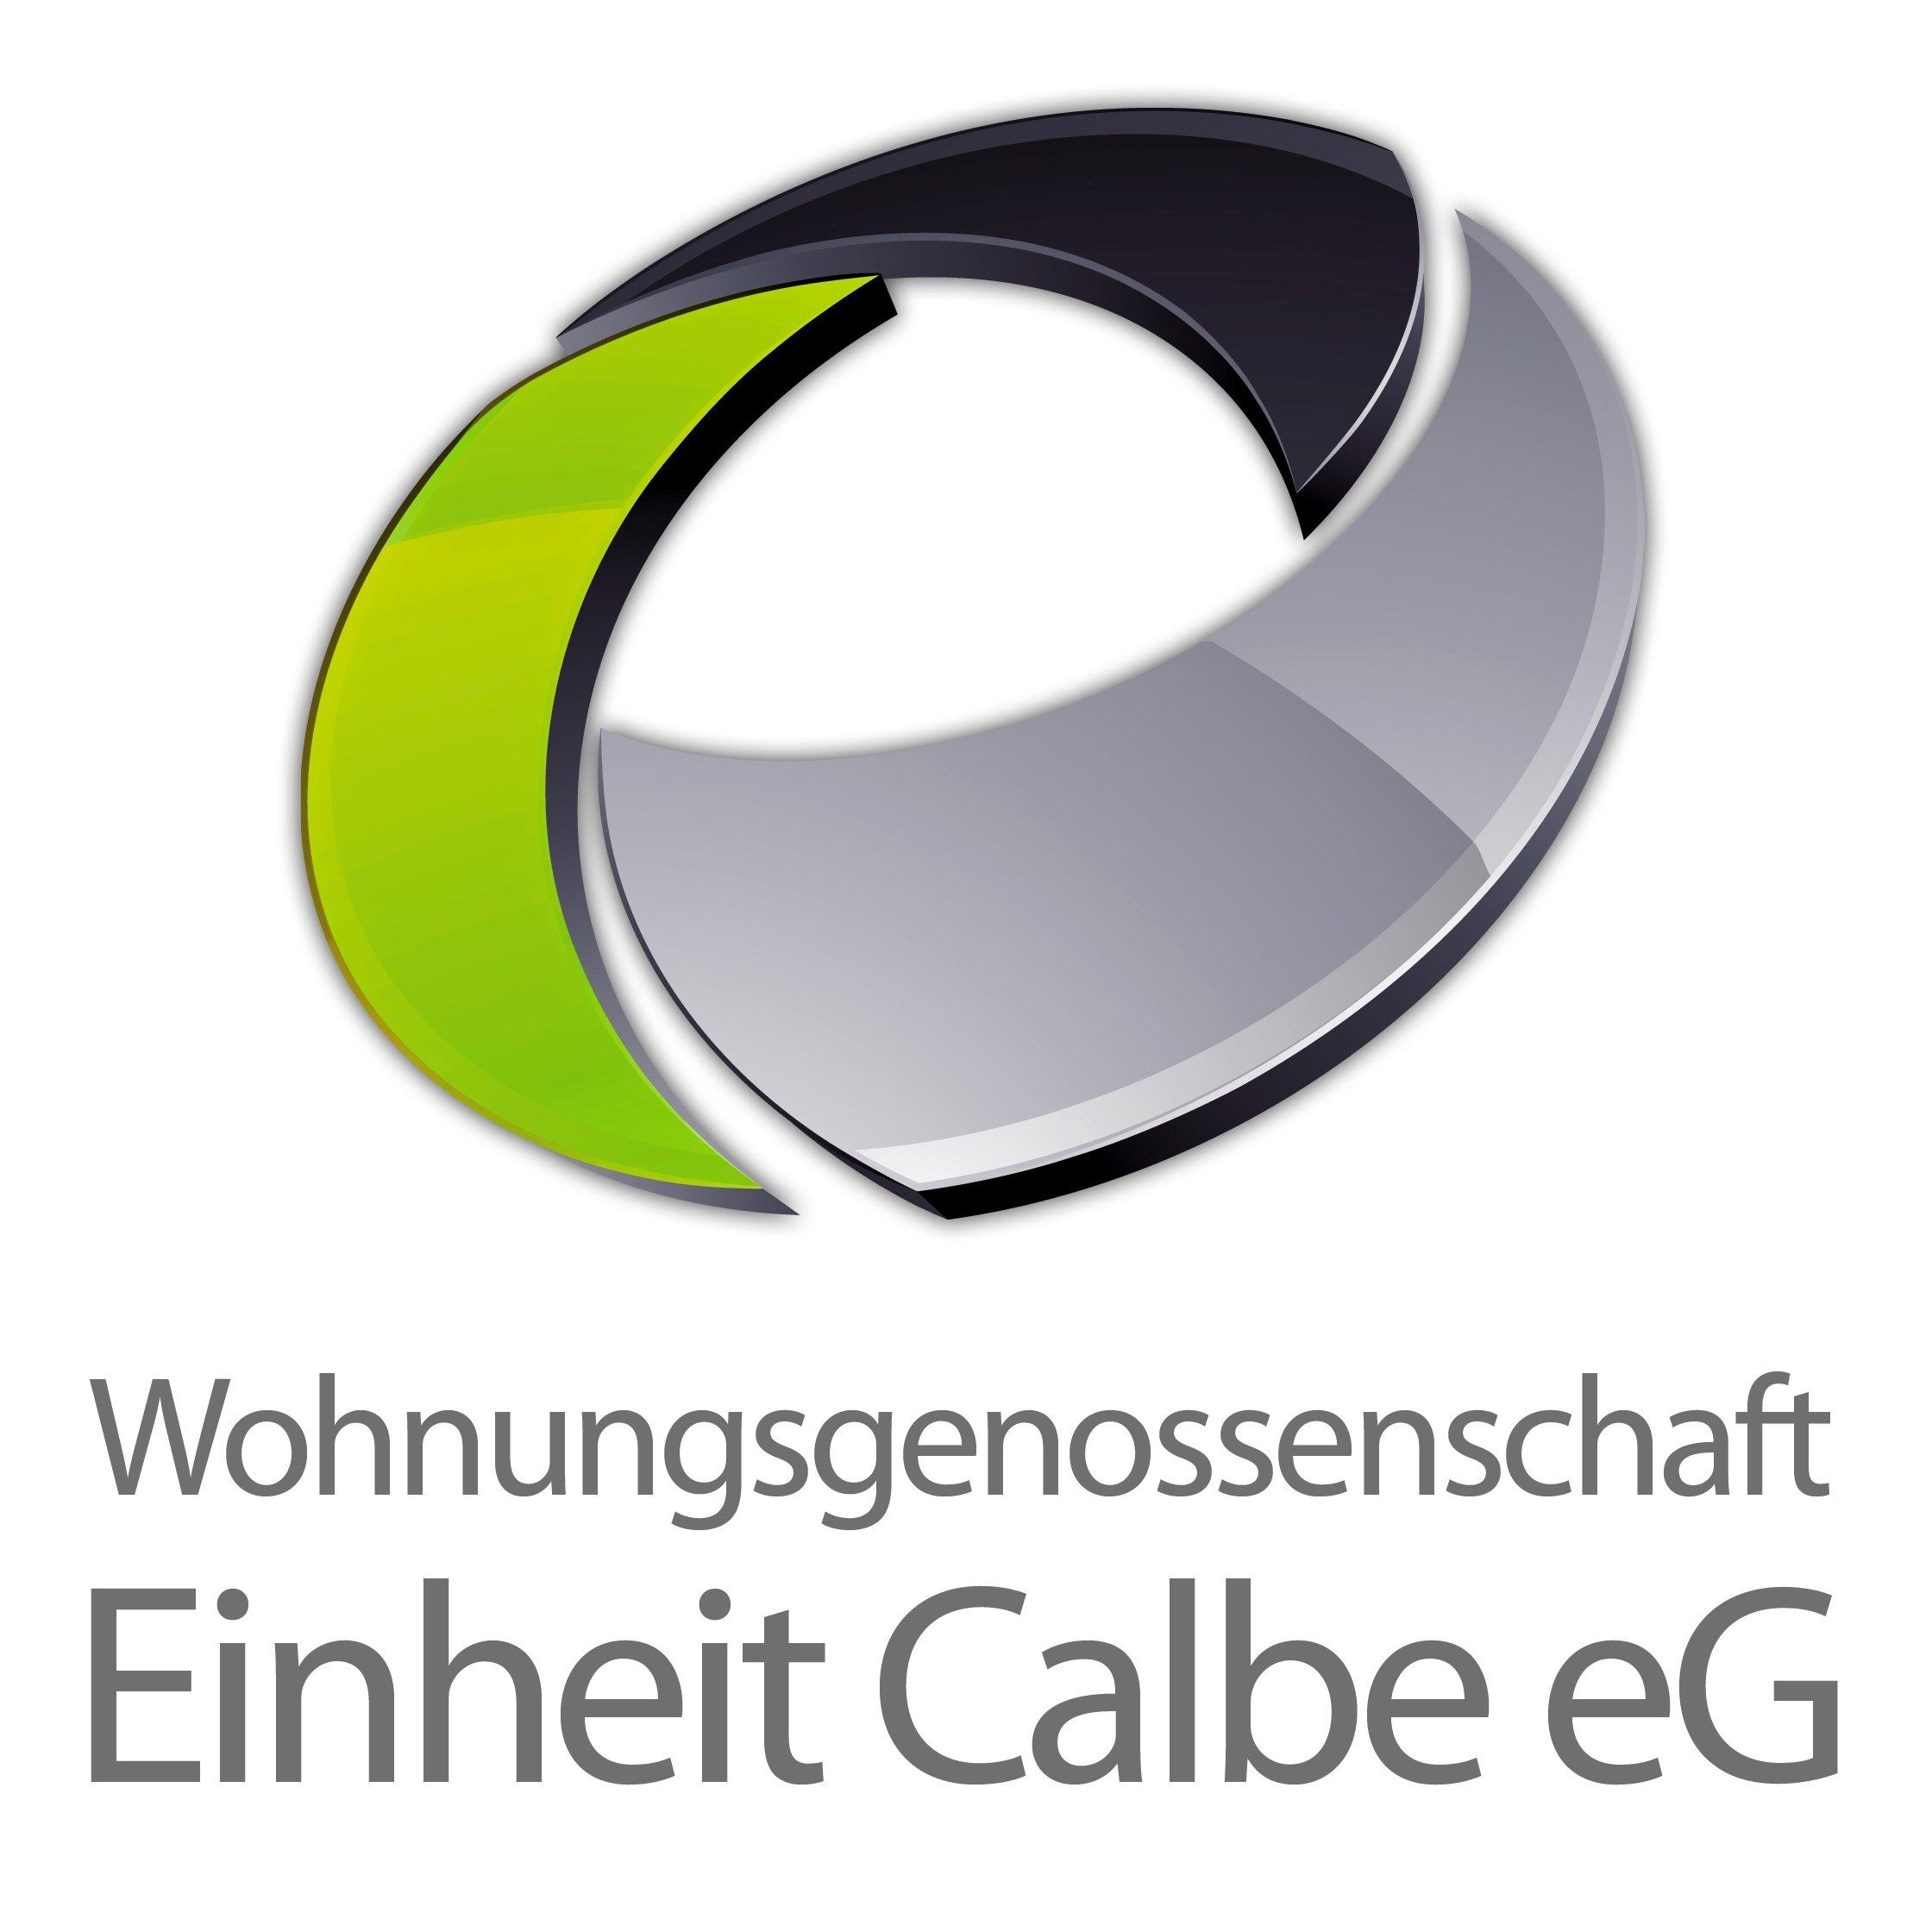 Wohnungsgenossenschaft Einheit Calbe eG in Calbe an der Saale - Logo